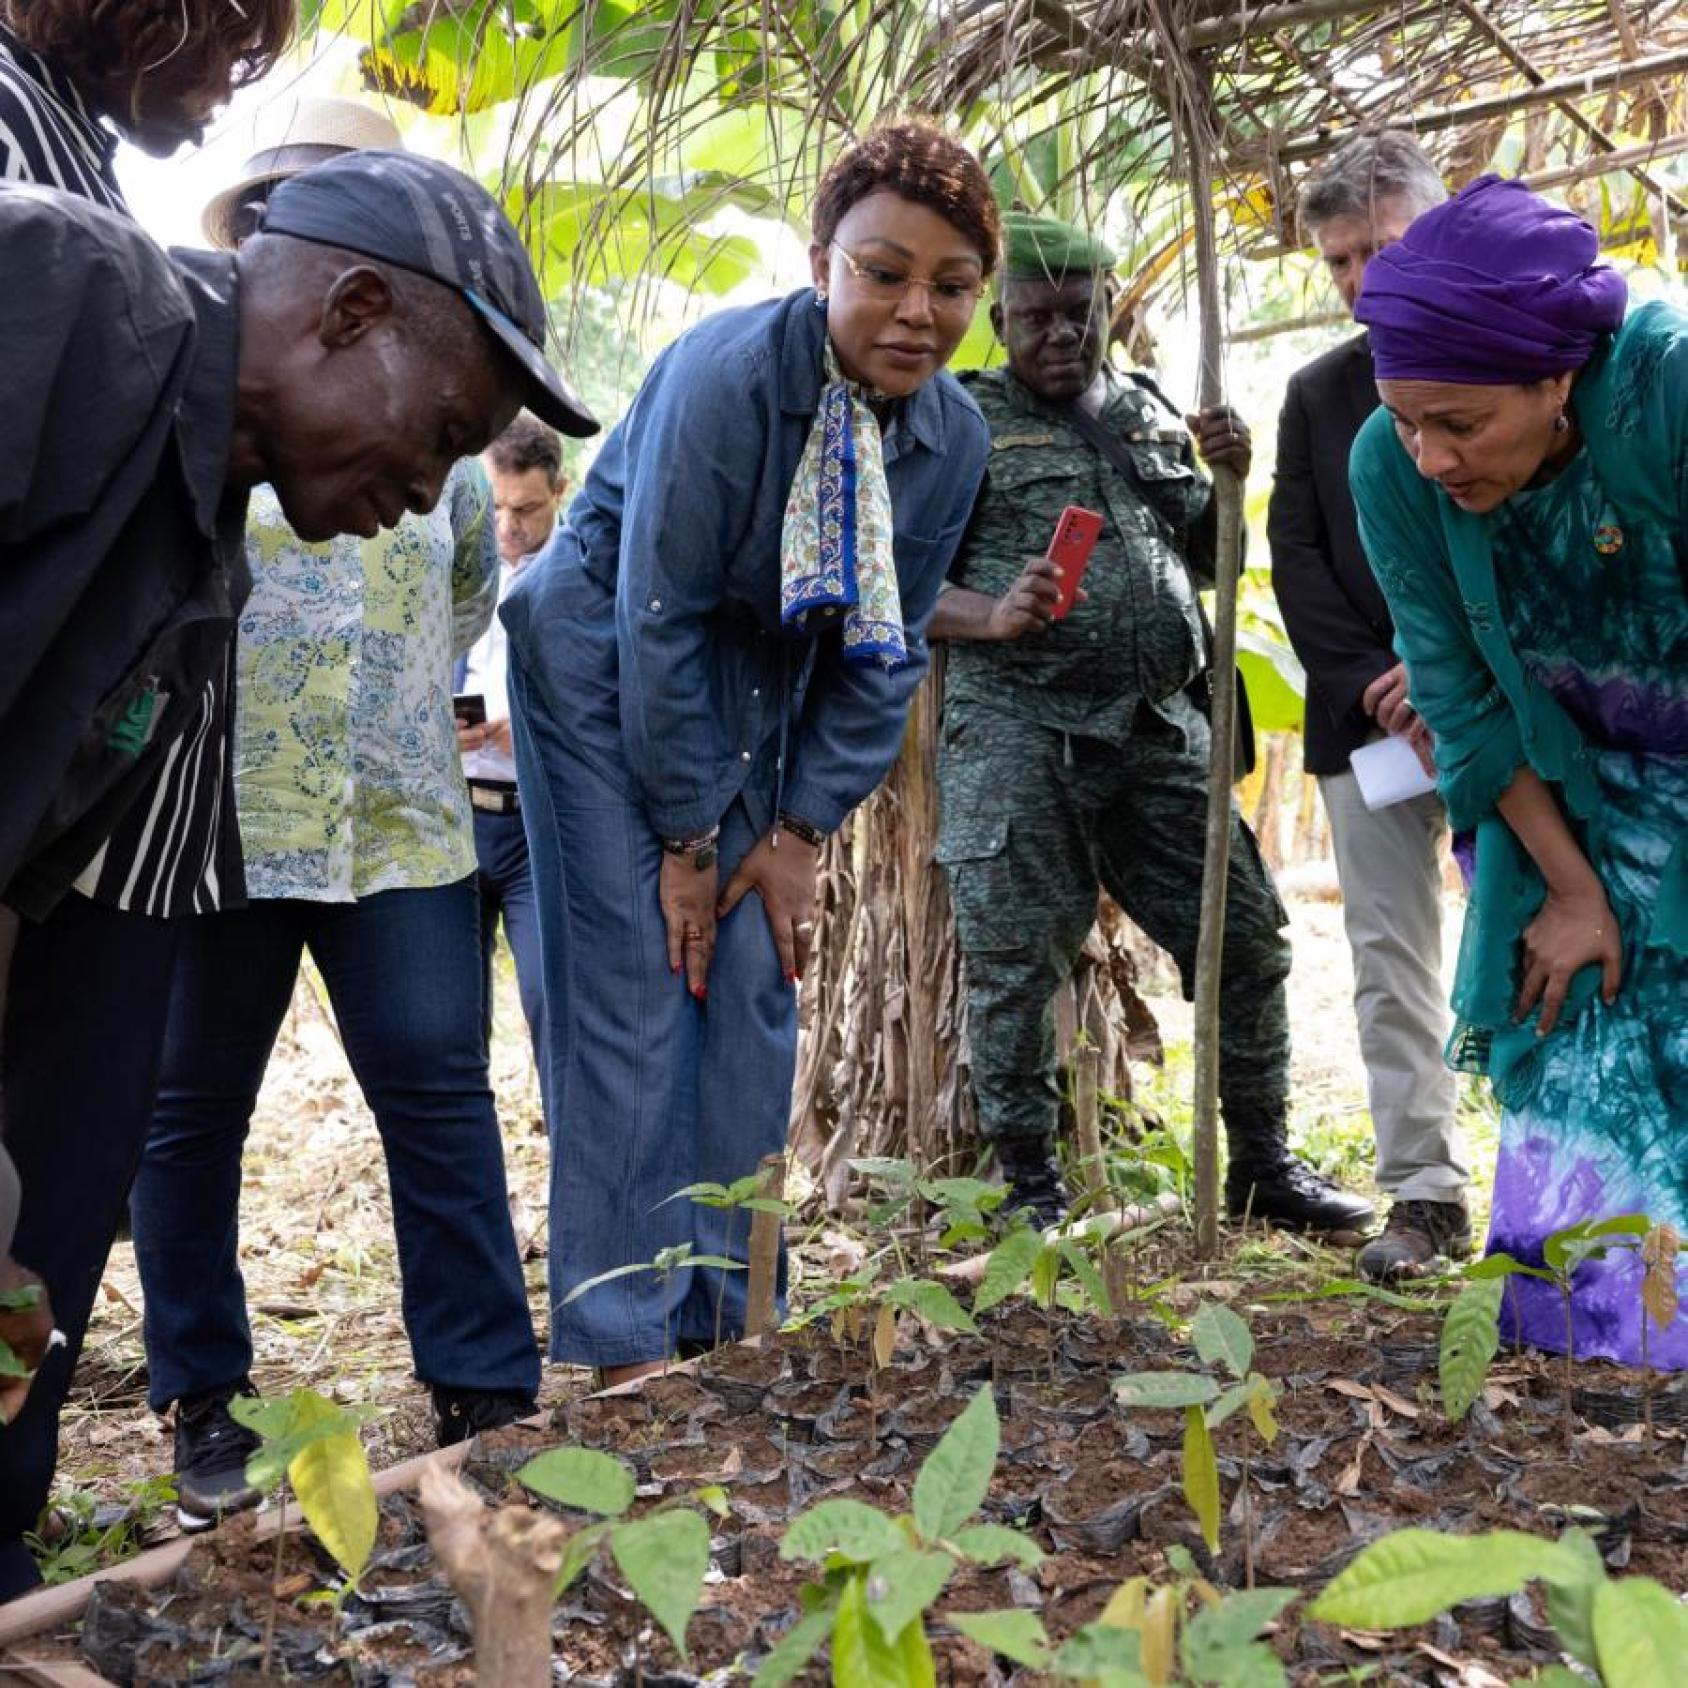 La régénération des plantations grâce à l'agroforesterie est essentielle pour la pérennité de la filière cacao en Côte d’Ivoire, selon la Vice-Secrétaire générale de l’ONU. 